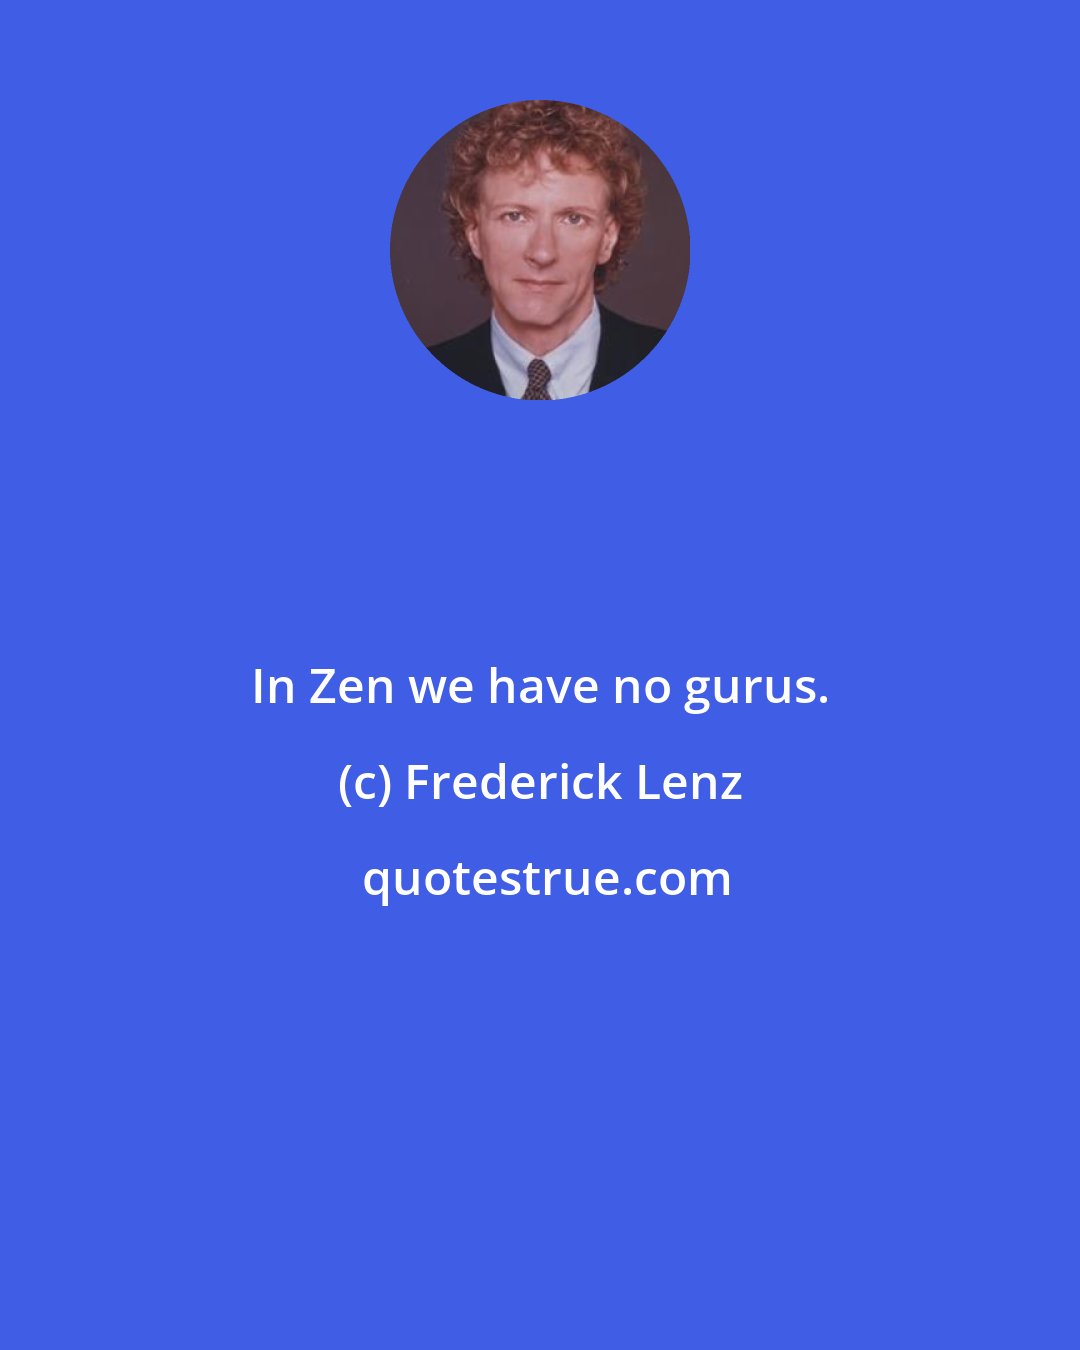 Frederick Lenz: In Zen we have no gurus.